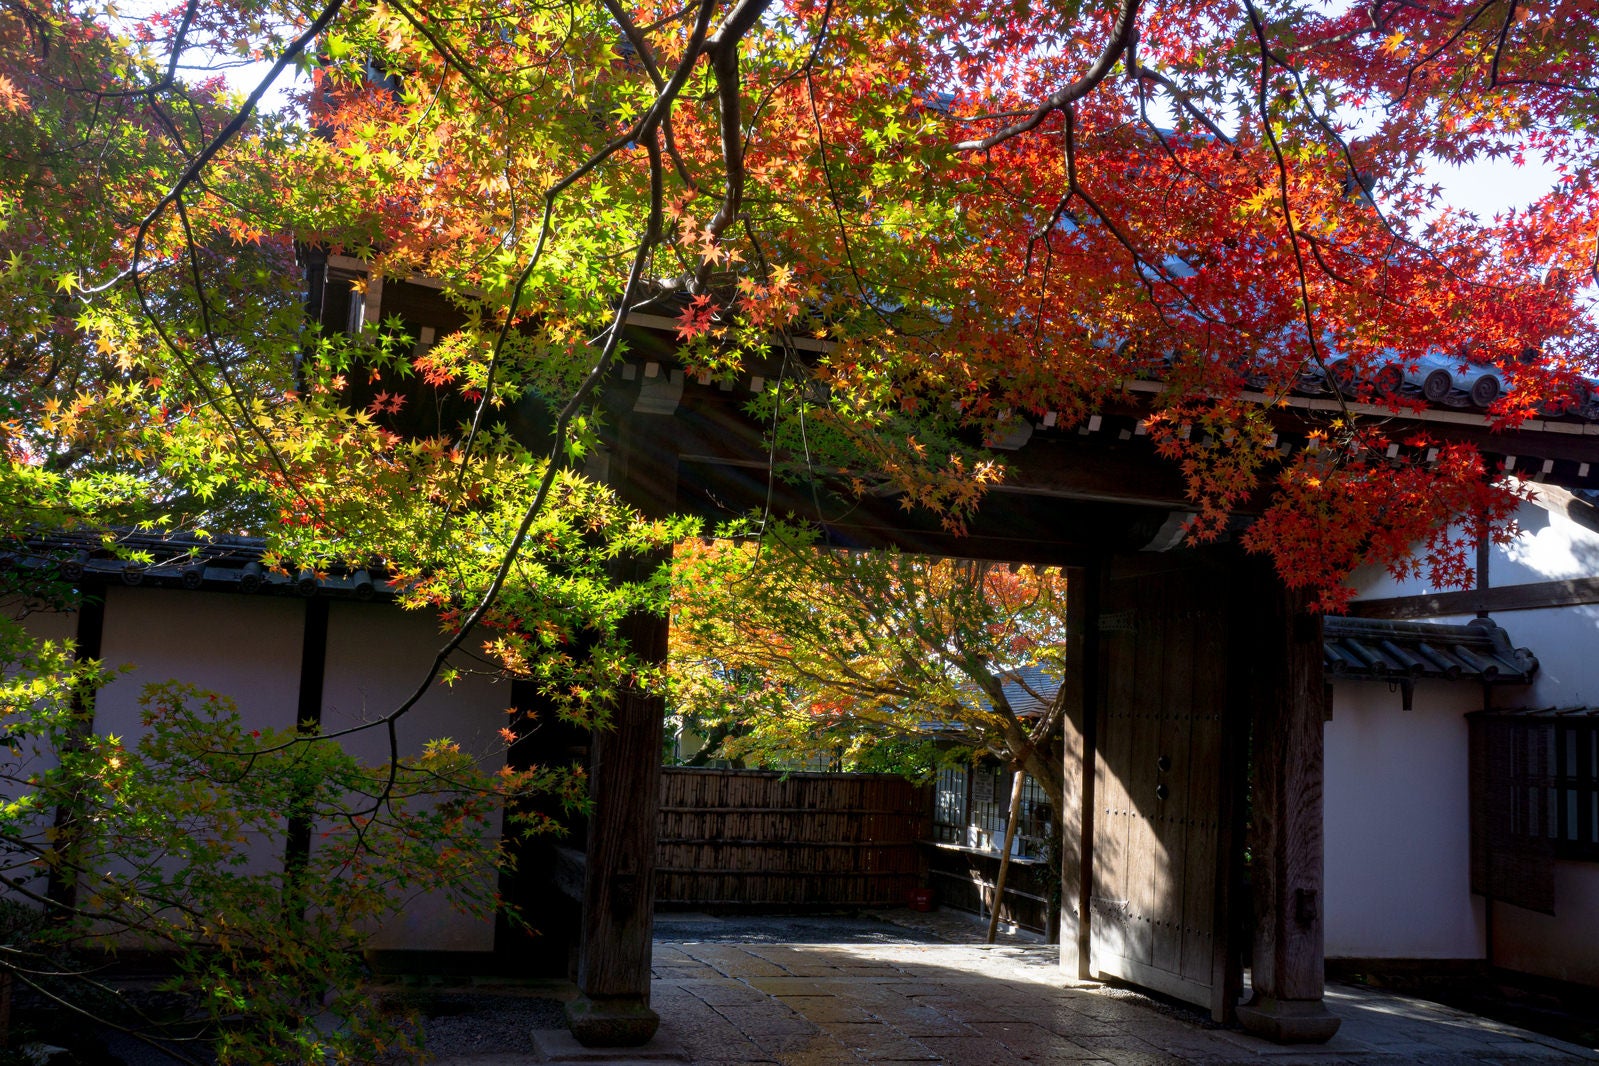 「龍安寺の山門と日に輝く紅葉した枝葉」の写真